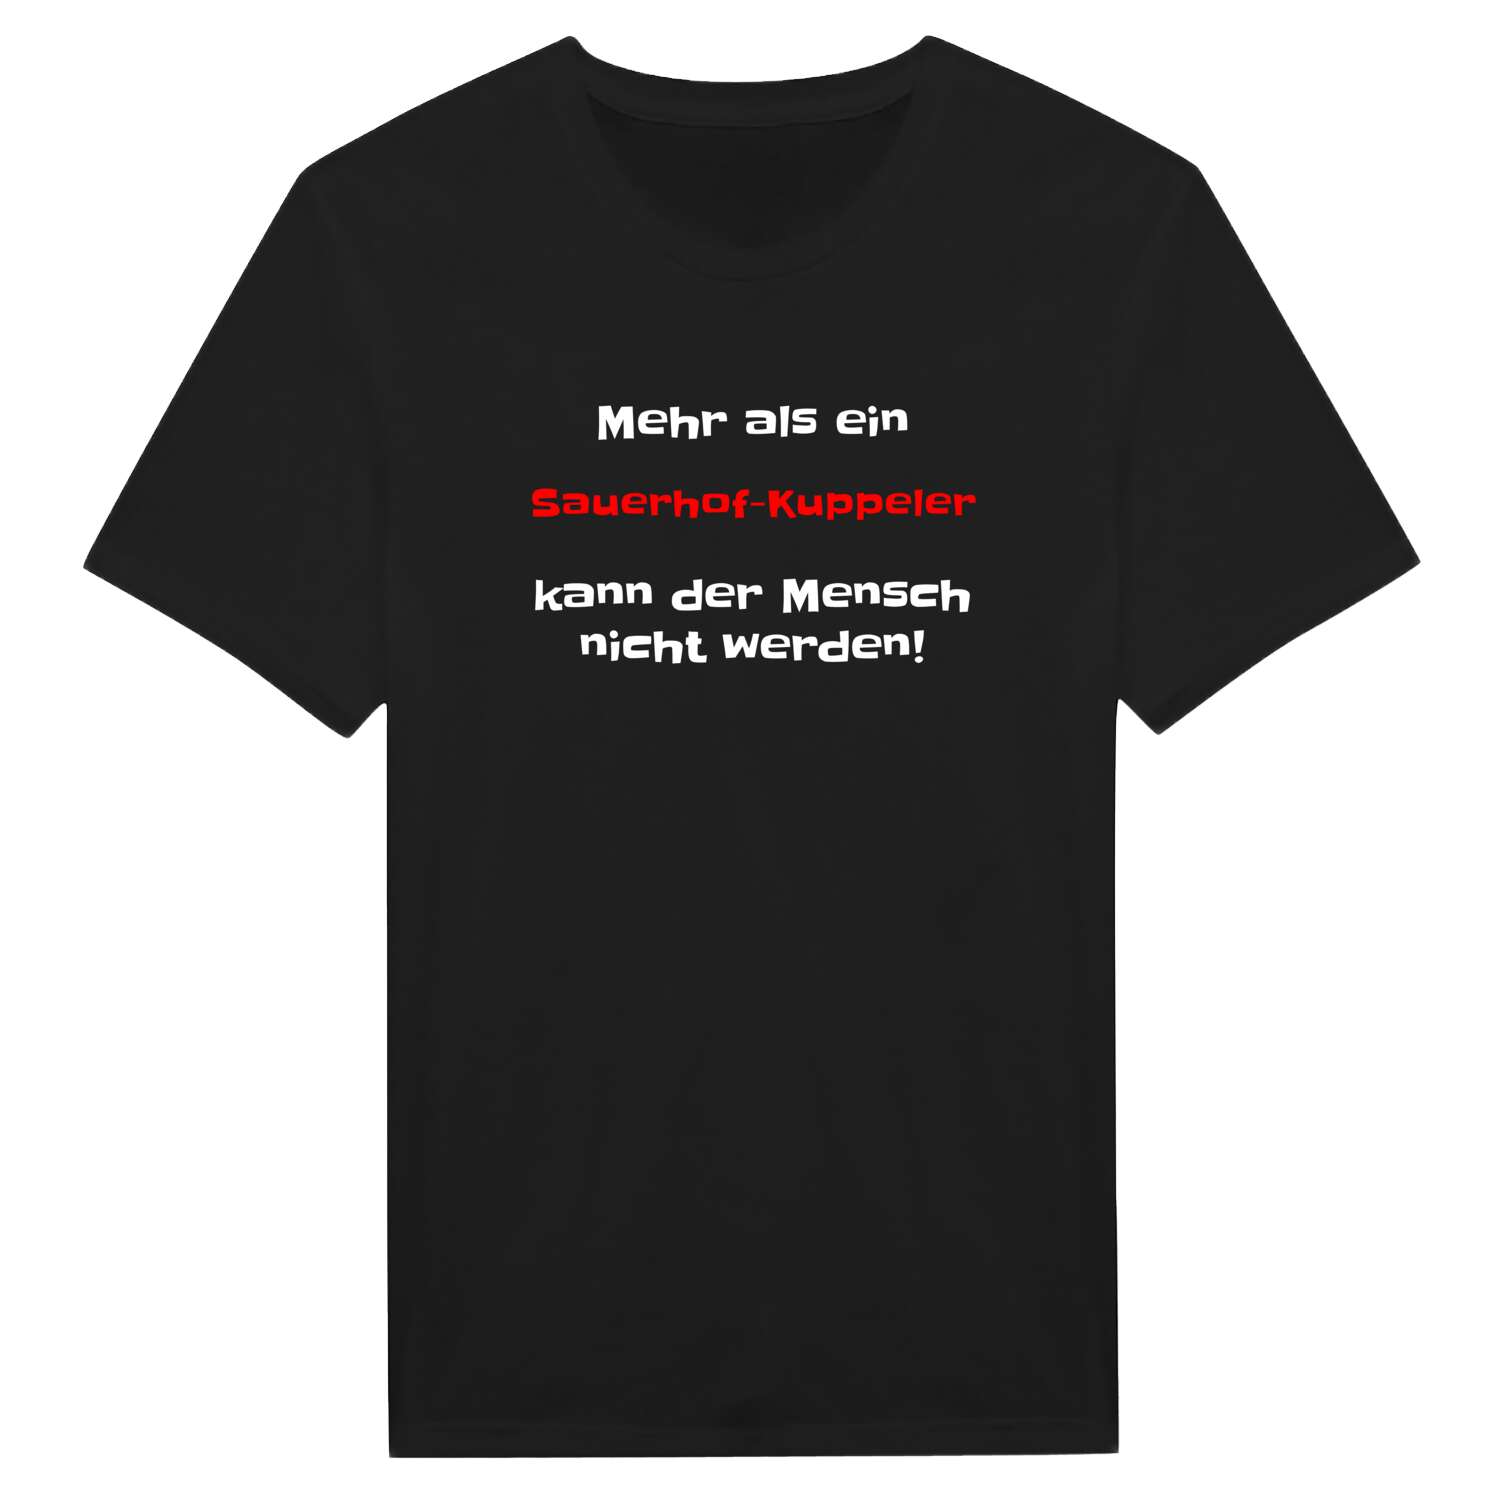 Sauerhof-Kuppel T-Shirt »Mehr als ein«